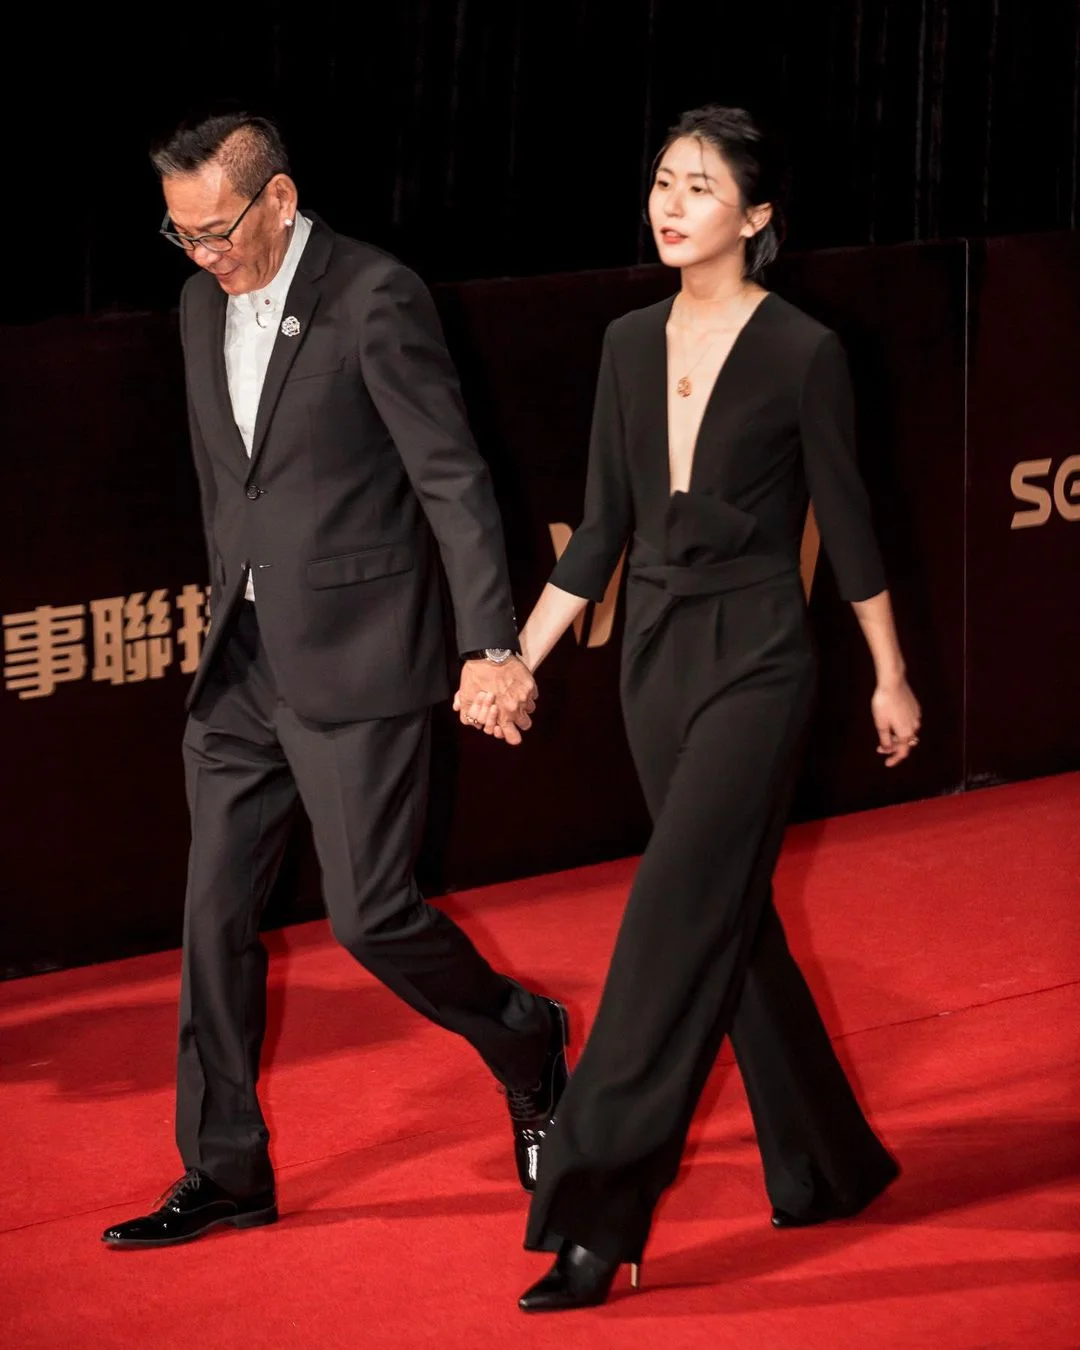 过去，龙劭华在入围金钟奖时，曾牵著女儿陈璇走红毯，说女儿是他的幸运物。